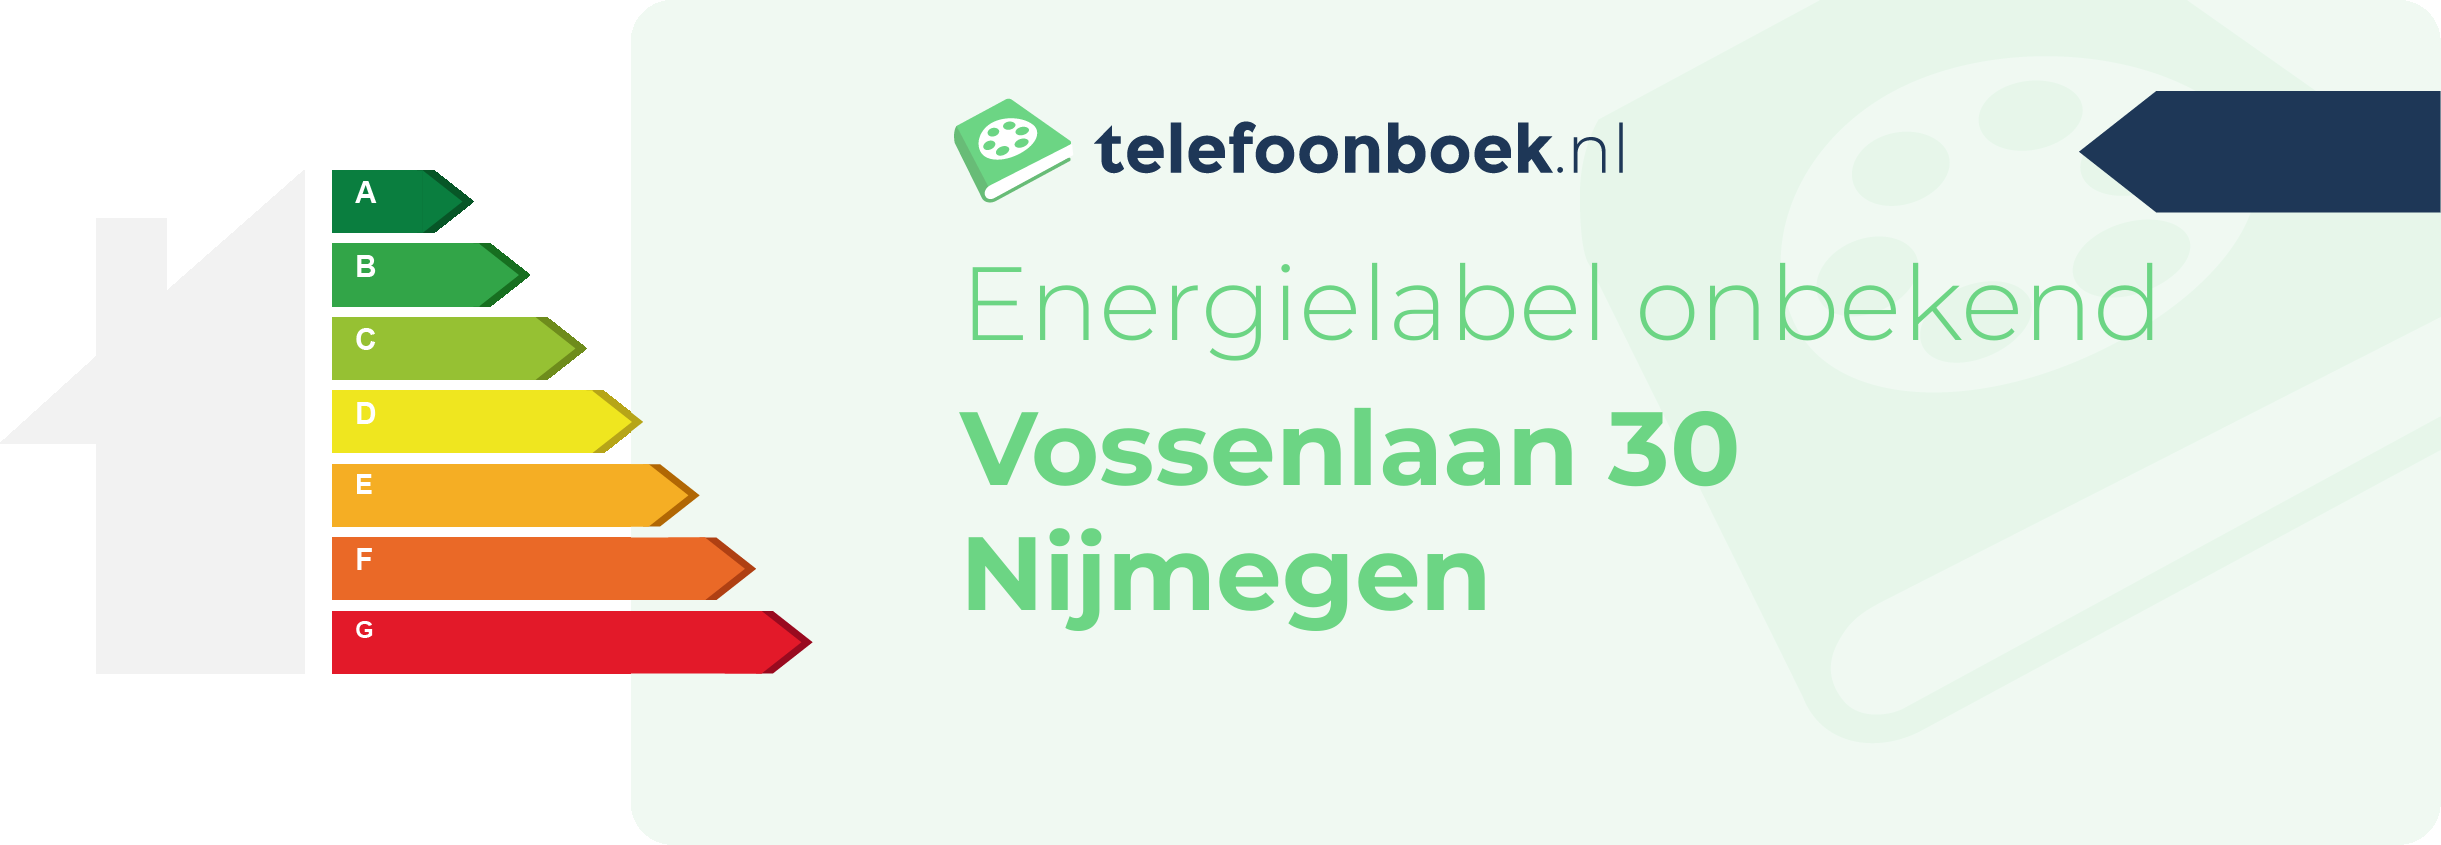 Energielabel Vossenlaan 30 Nijmegen